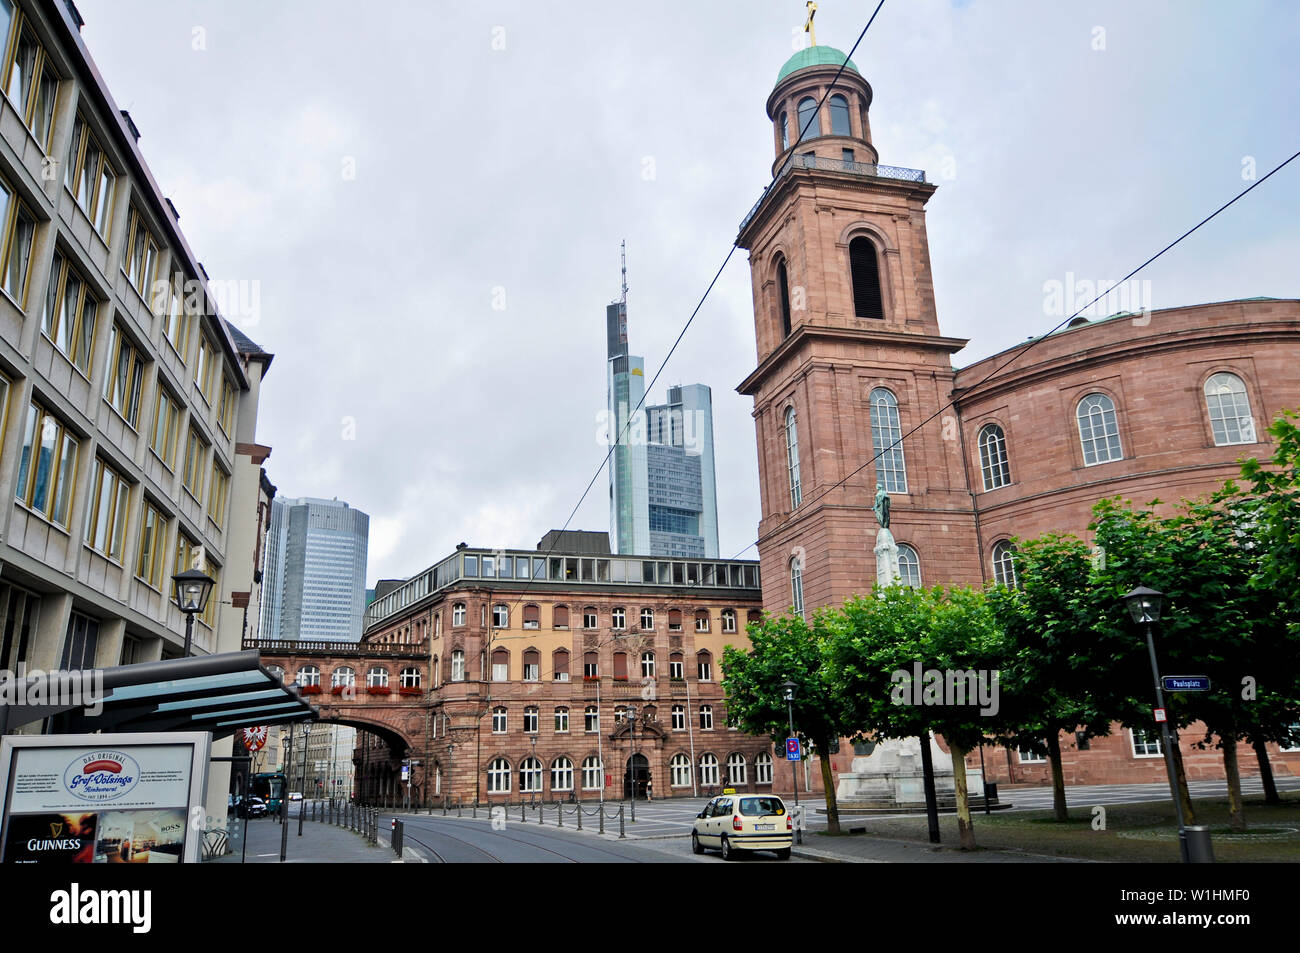 Paulsplatz (St Paul's Square), avec l'église St Paul et l'unité Monument. Francfort, Allemagne Banque D'Images